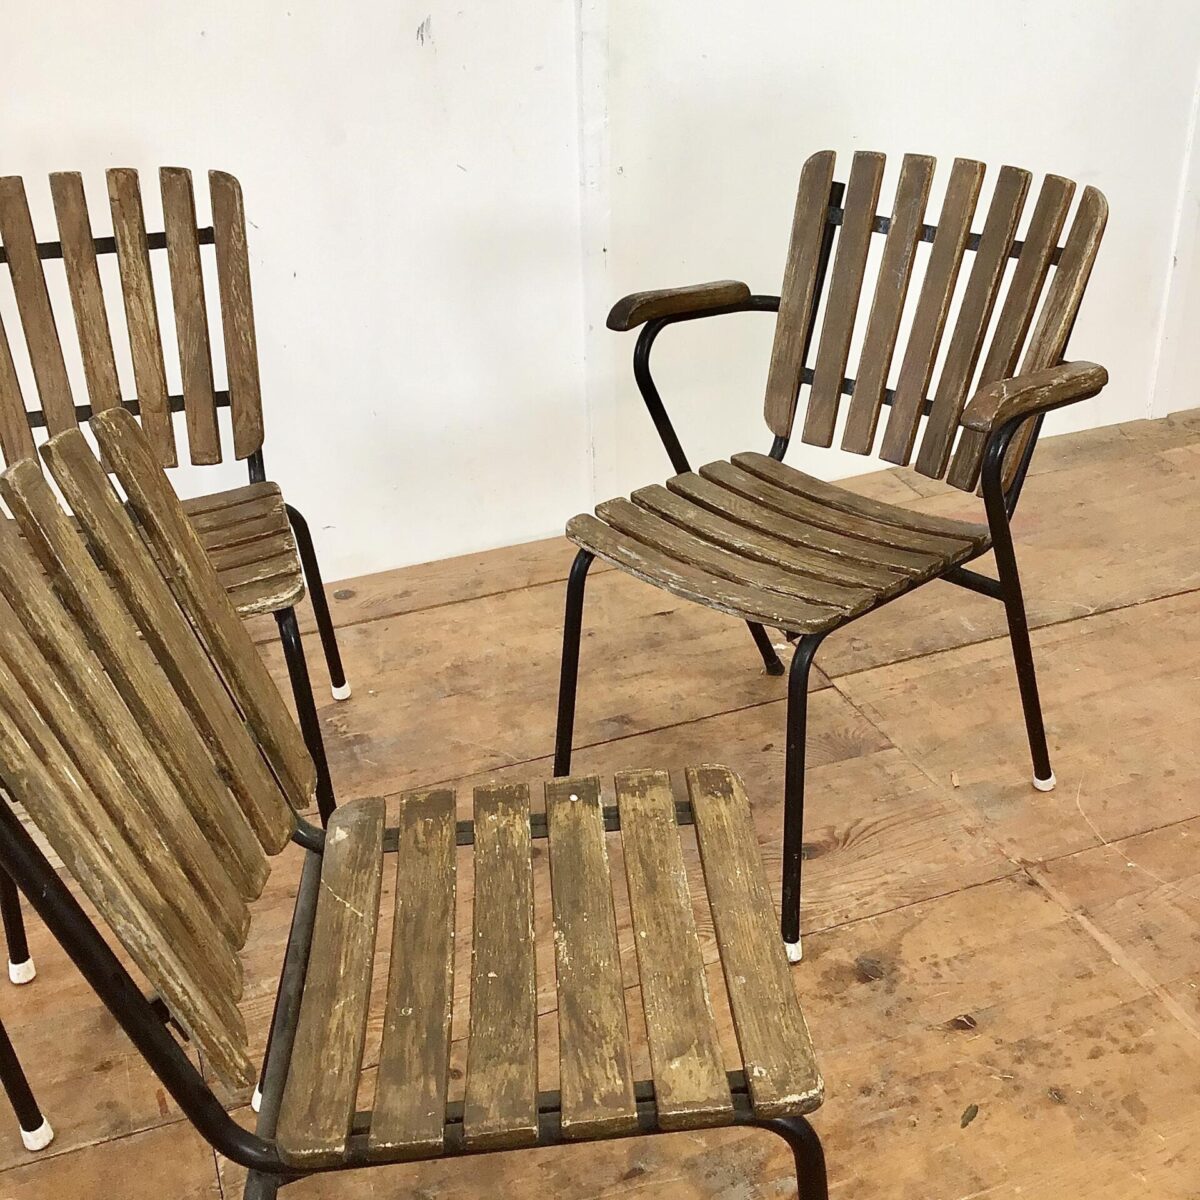 Vintage Gartenstühle stapelbar mit Holzlatten. Einer mit Armlehnen und drei ohne. Hersteller nicht ersichtlich, Bks Denmark hat Gartenstühle in ähnlichem Stil produziert. Die Holzlatten wurden mal etwas gebeizt, hätte man auch schöner machen können. Aber insgesamt in gesundem Vintage Zustand.